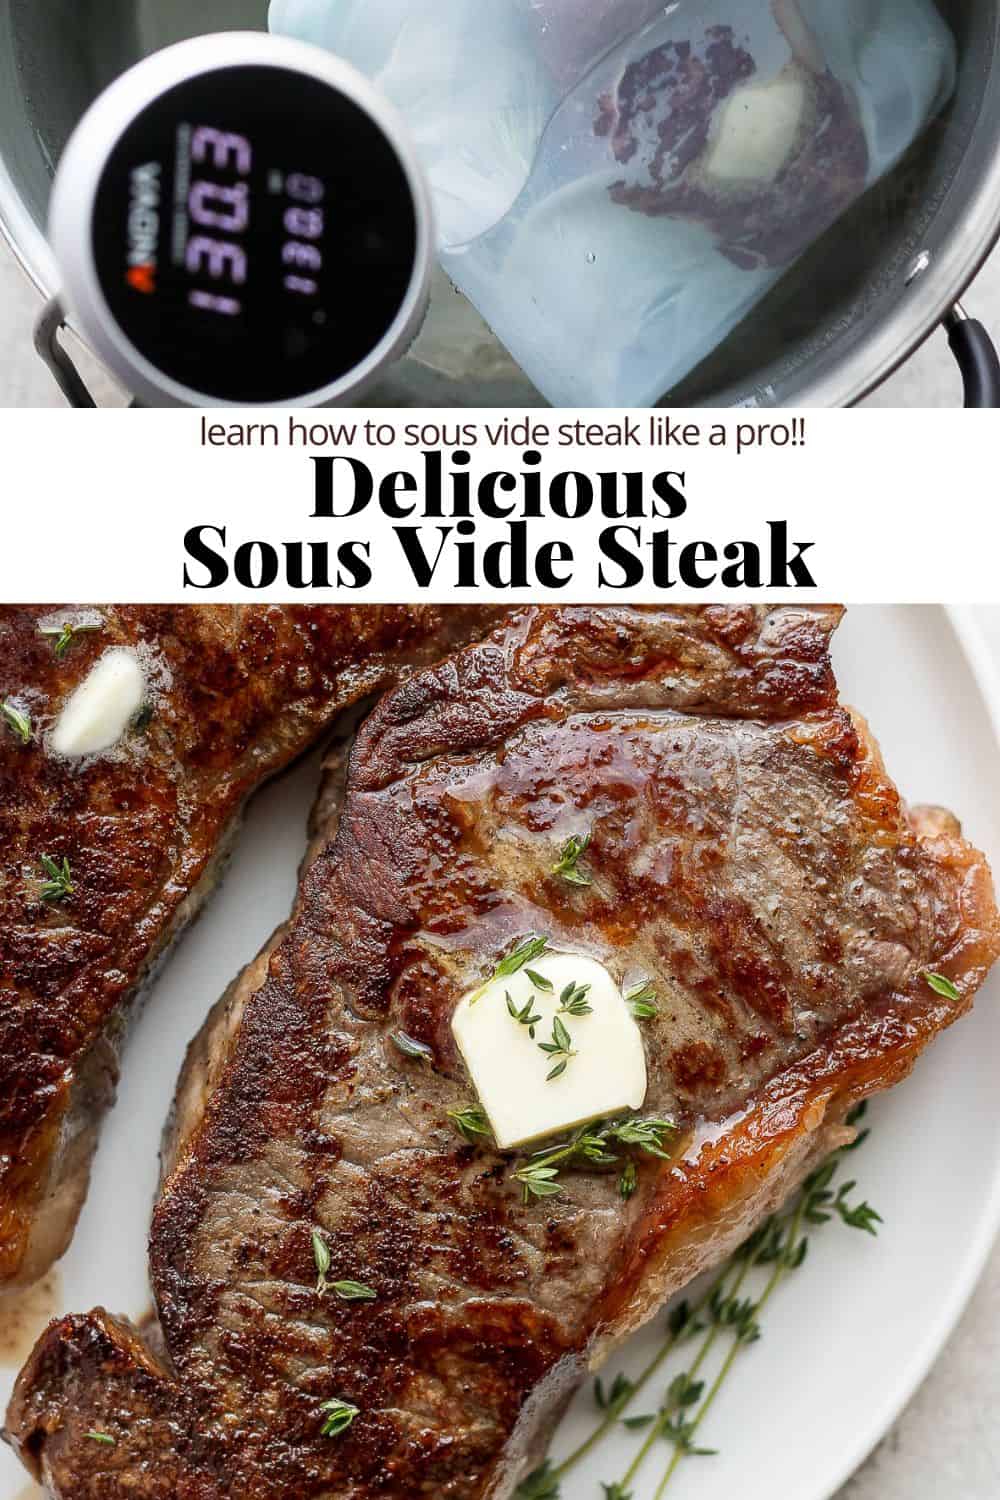 Pinterest image for a delicious sous vide steak.